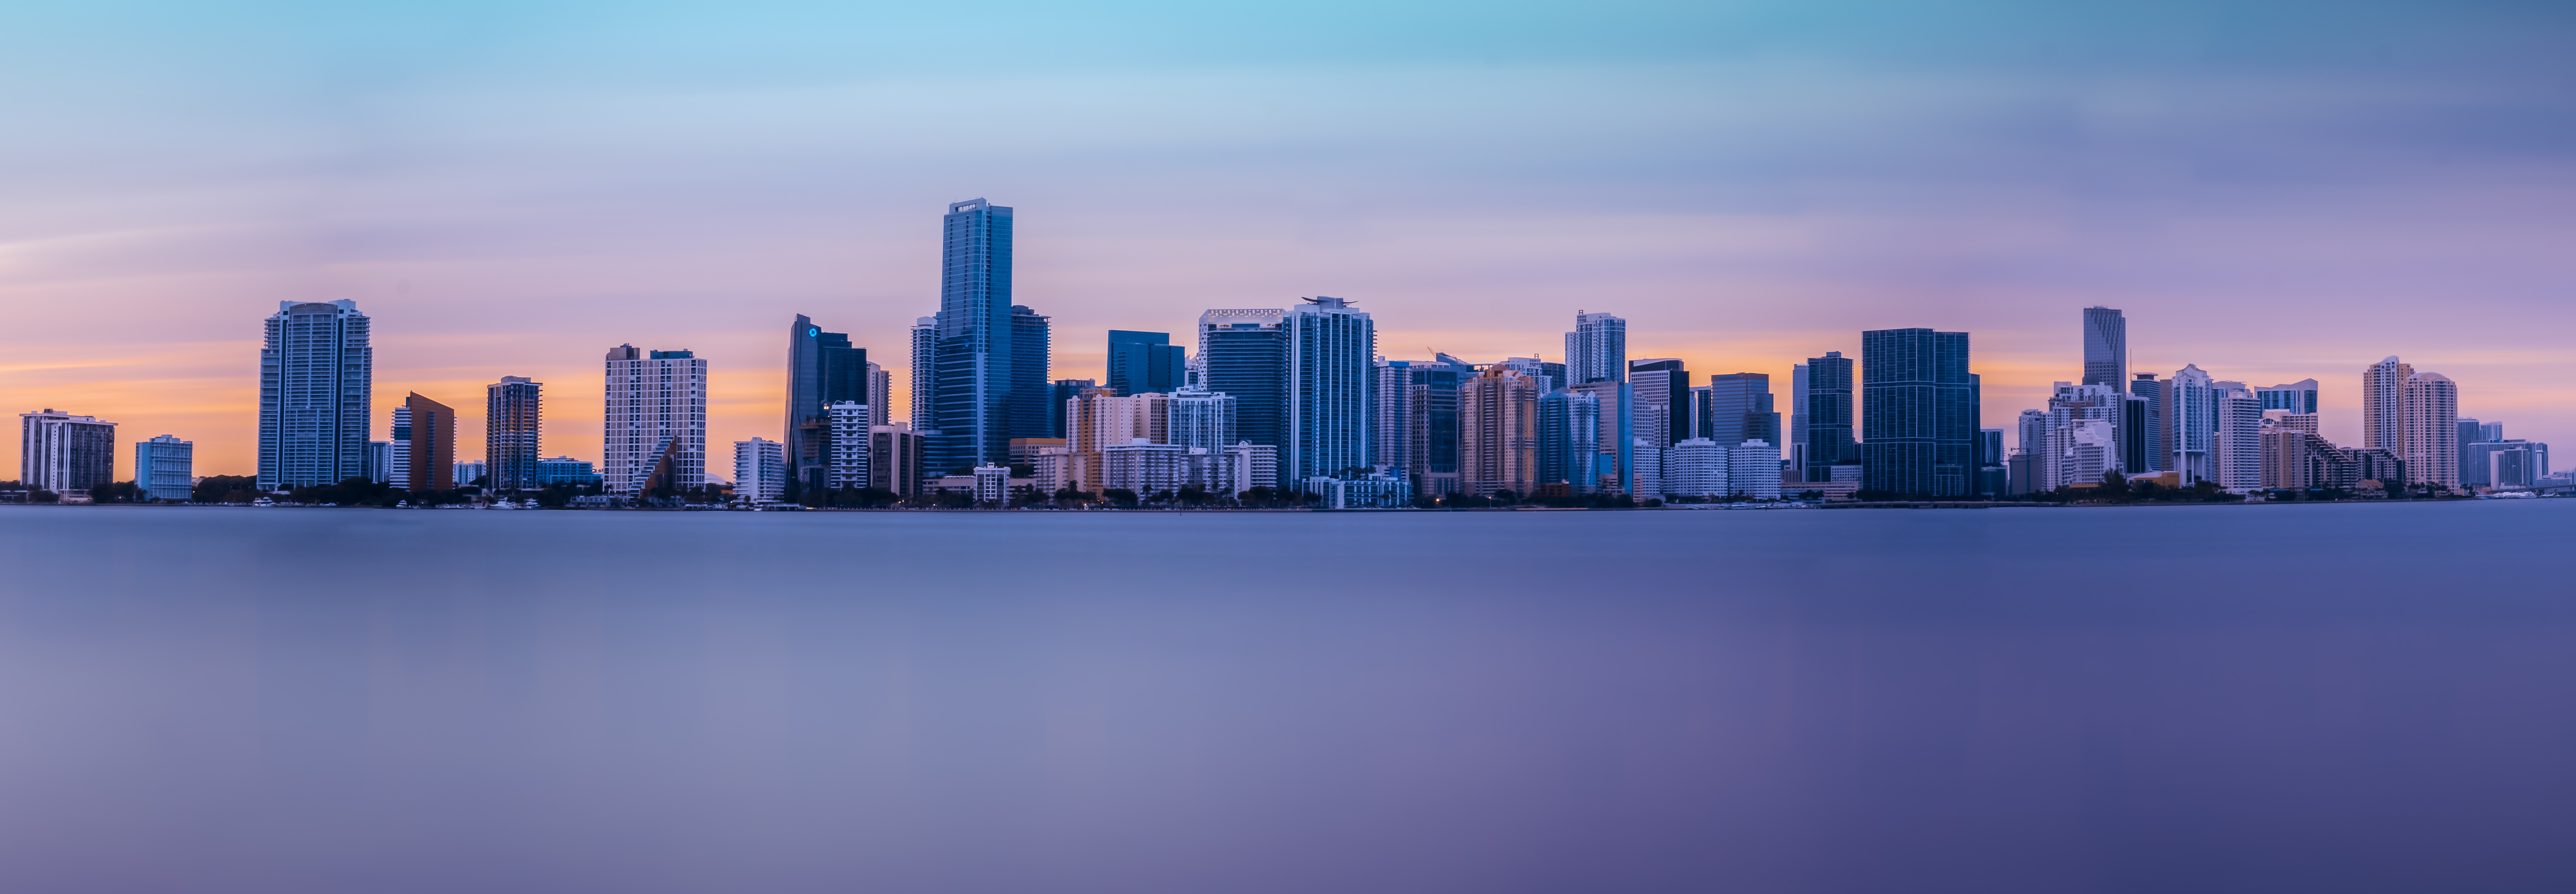 Best Miami HD Wallpaper